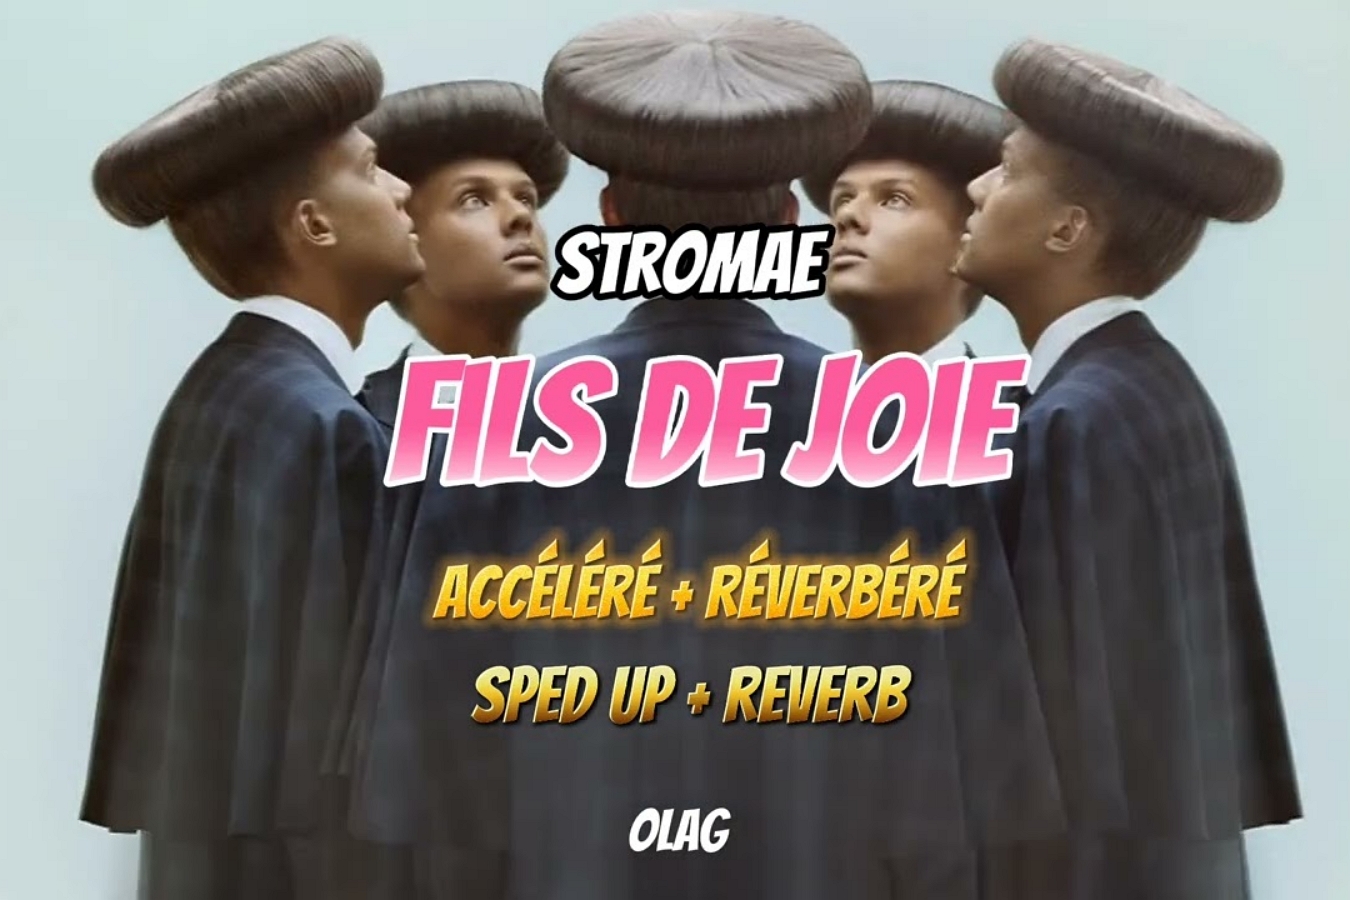 Stromae с размахом провел похороны в своем клипе «Fils de joie»